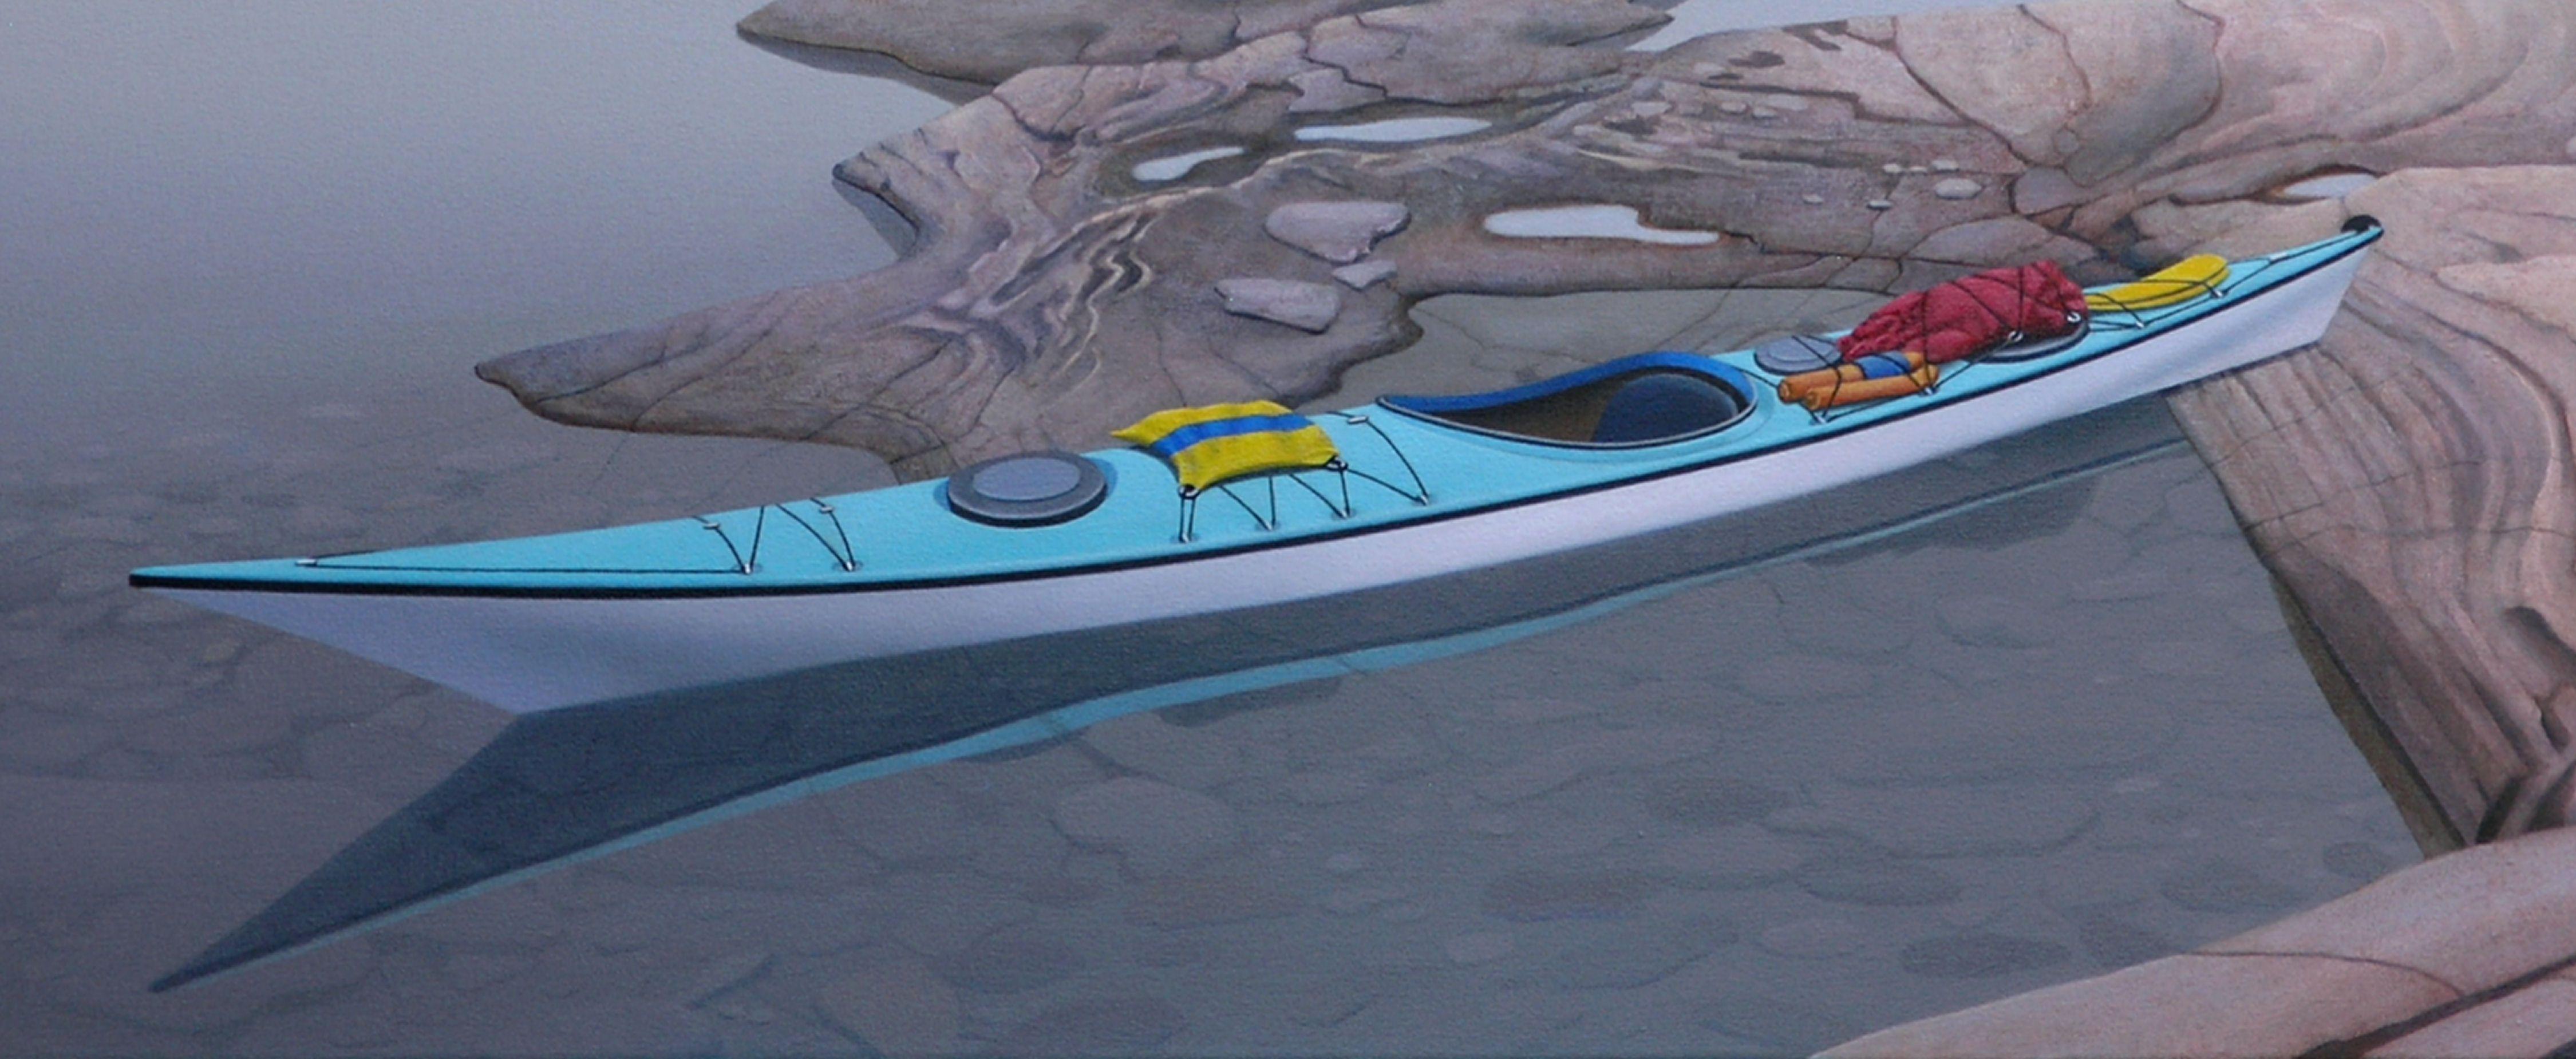 painting a kayak